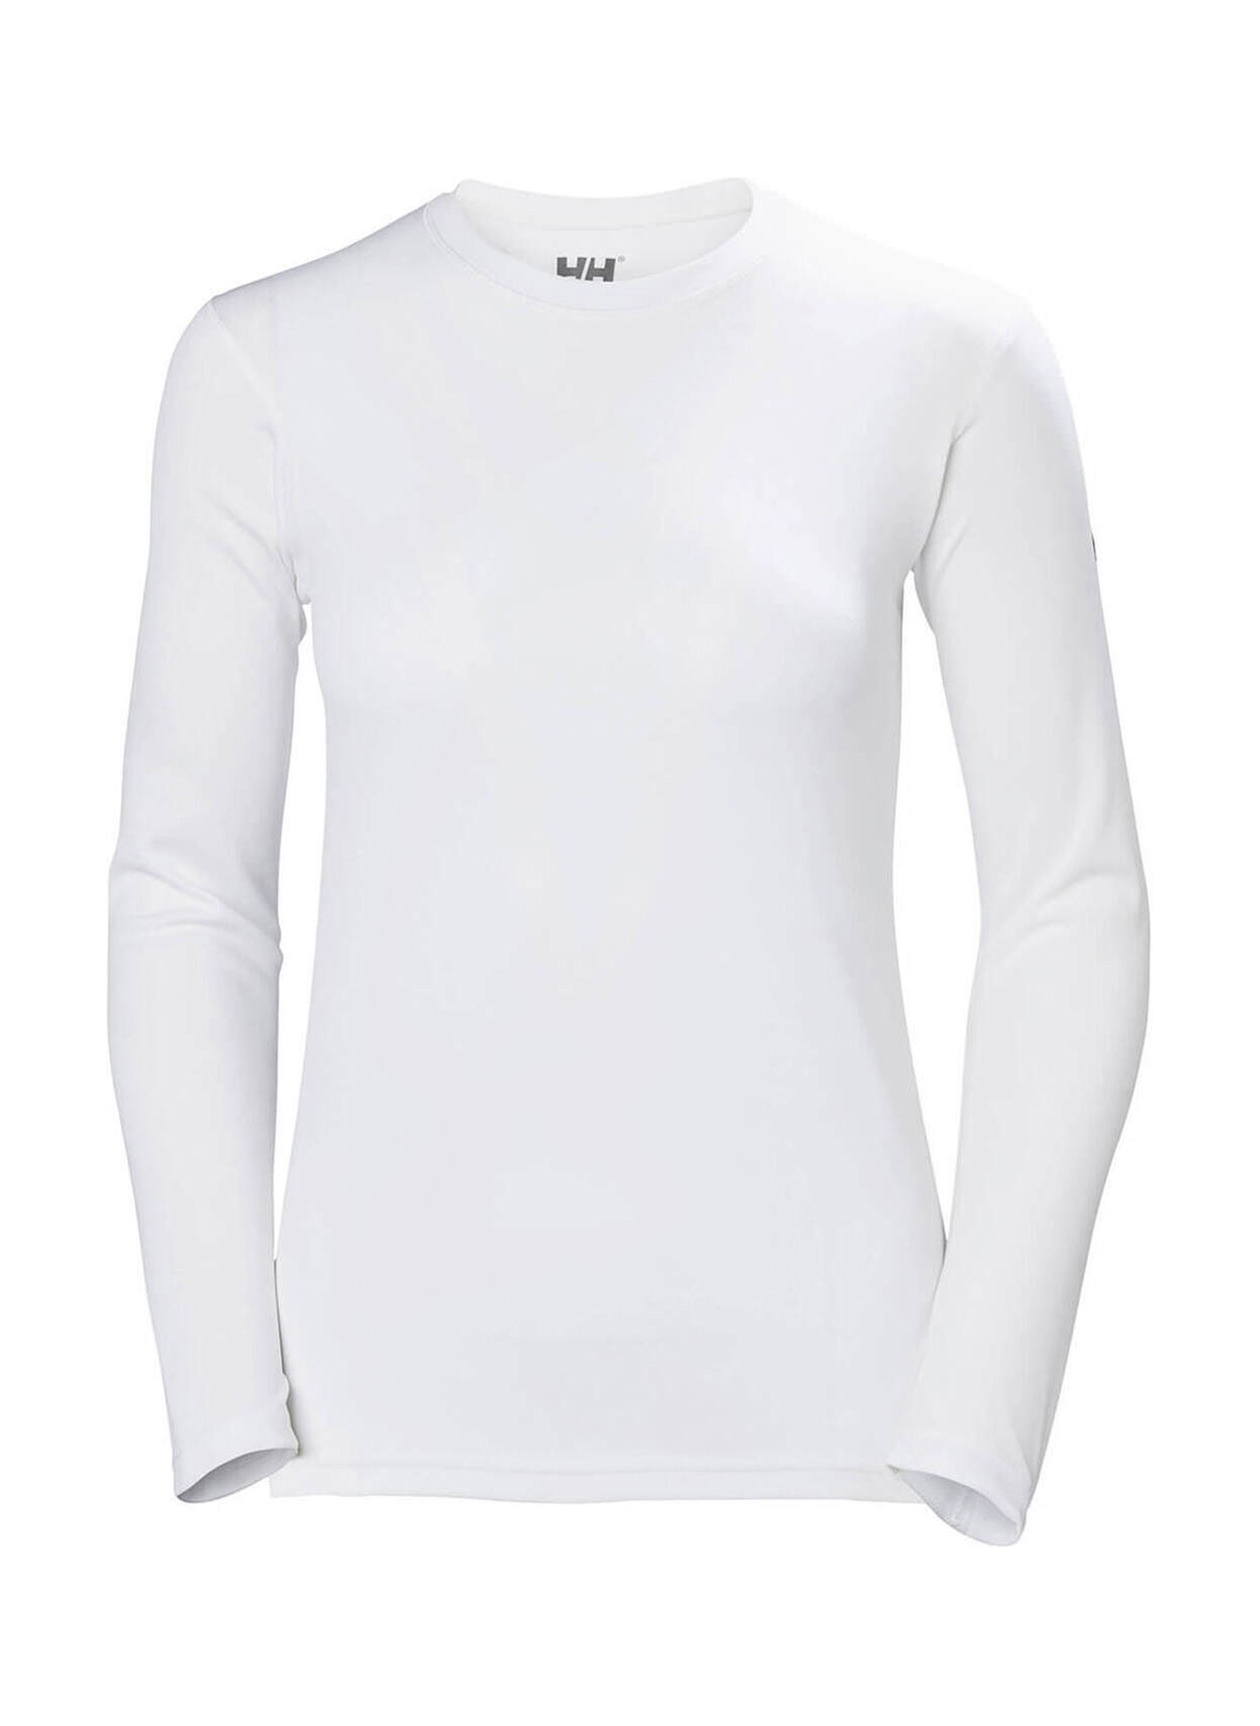 Helly Hansen Women's White Tech Long-Sleeve T-Shirt